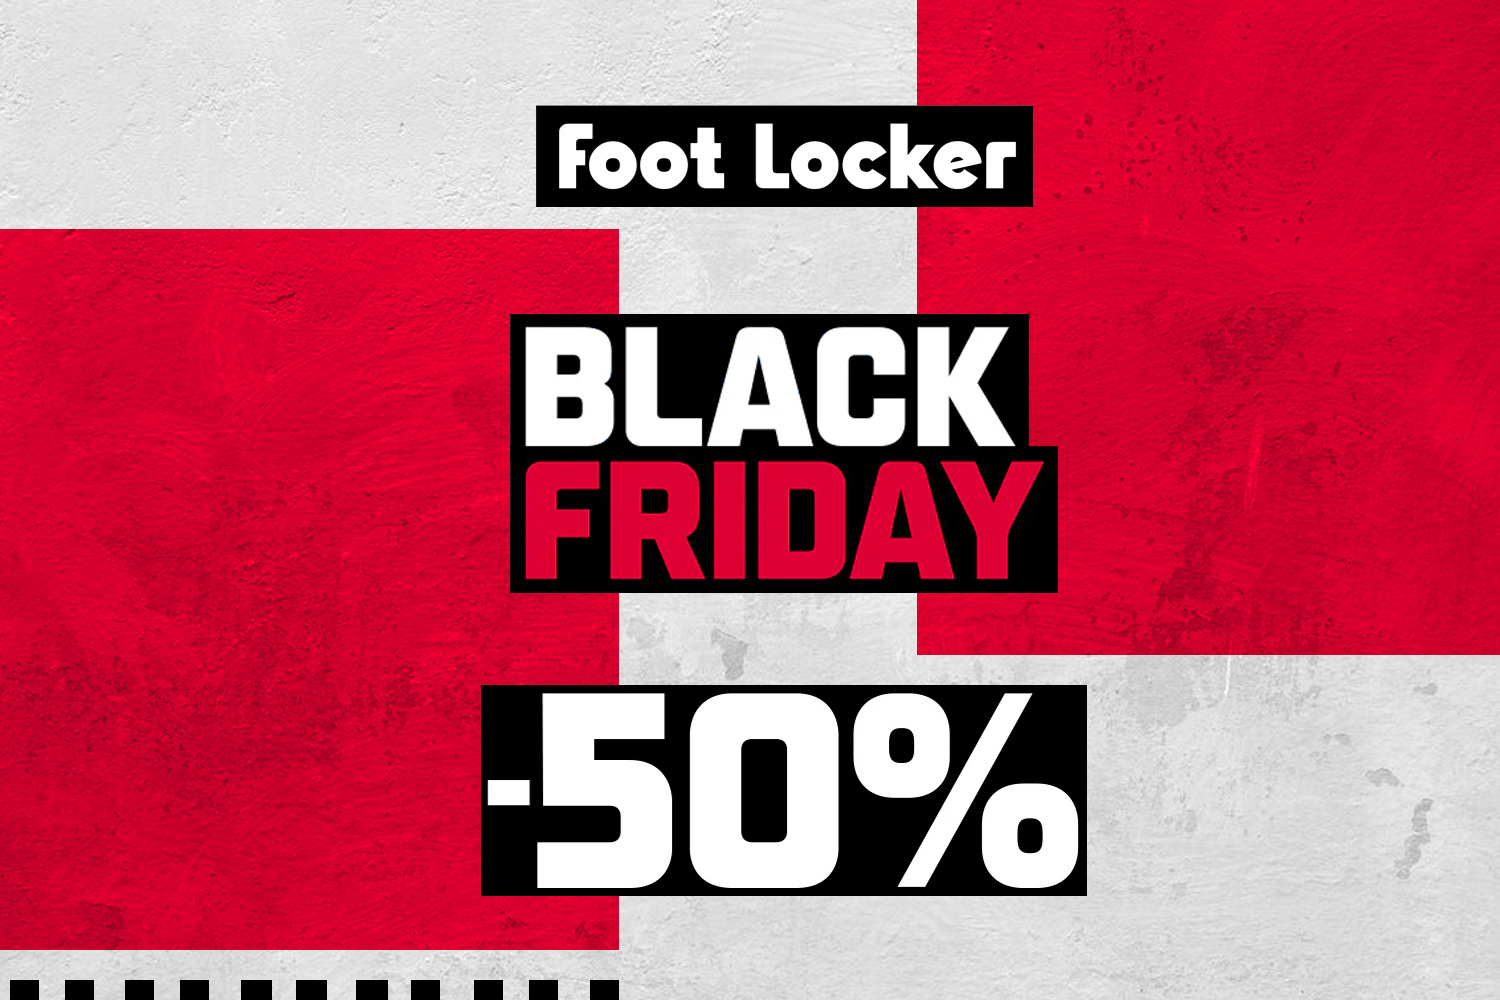 Onze favoriete kicks uit de Black Friday sale van Foot Locker